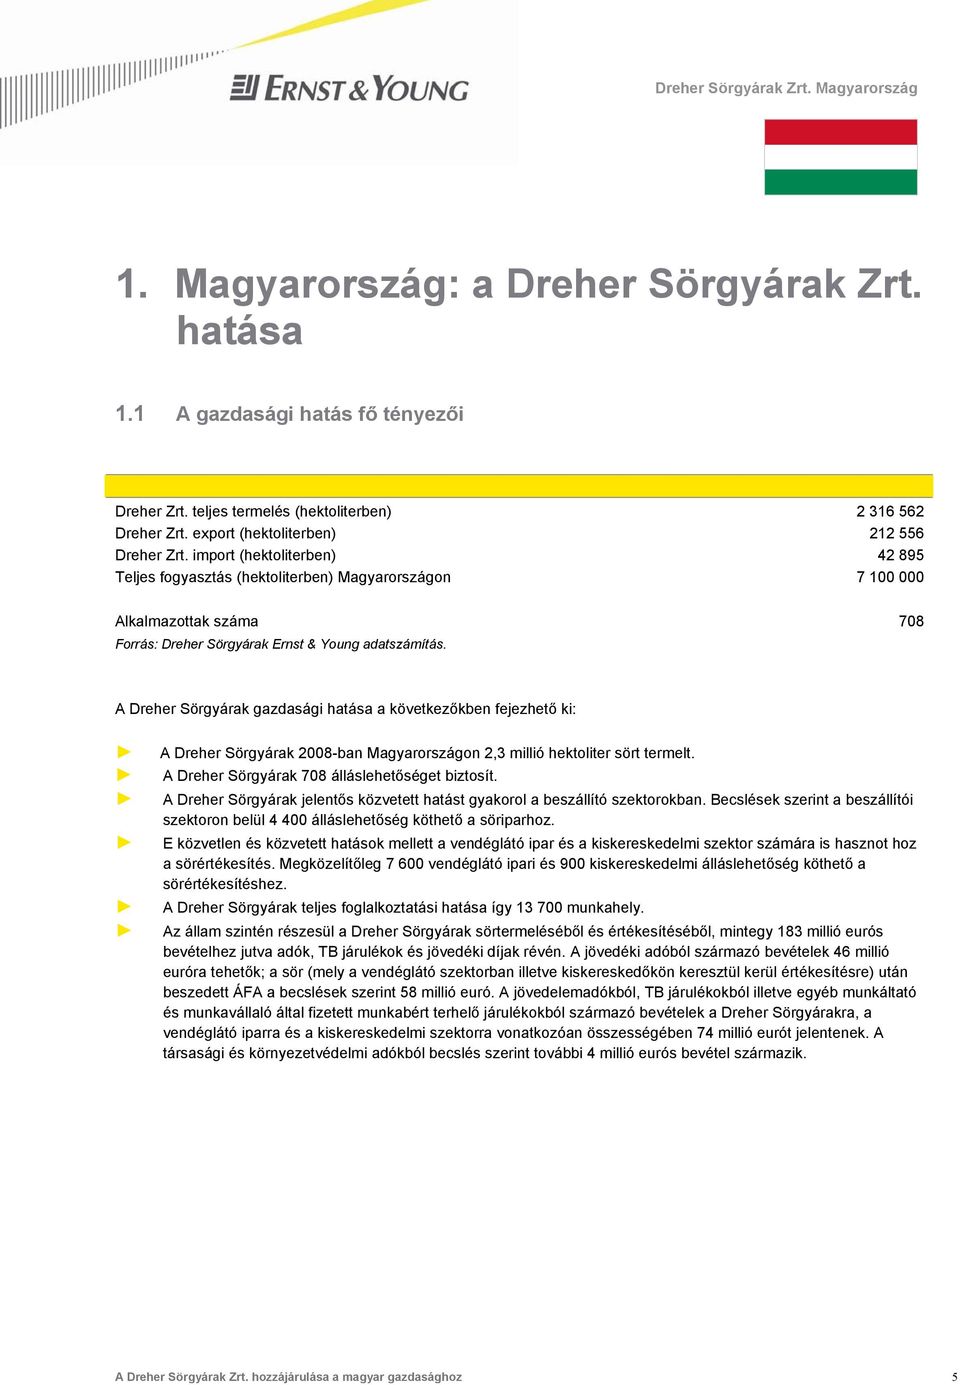 A Dreher Sörgyárak gazdasági hatása a következőkben fejezhető ki: A Dreher Sörgyárak 2008-ban Magyarországon 2,3 millió hektoliter sört termelt. A Dreher Sörgyárak 708 álláslehetőséget biztosít.